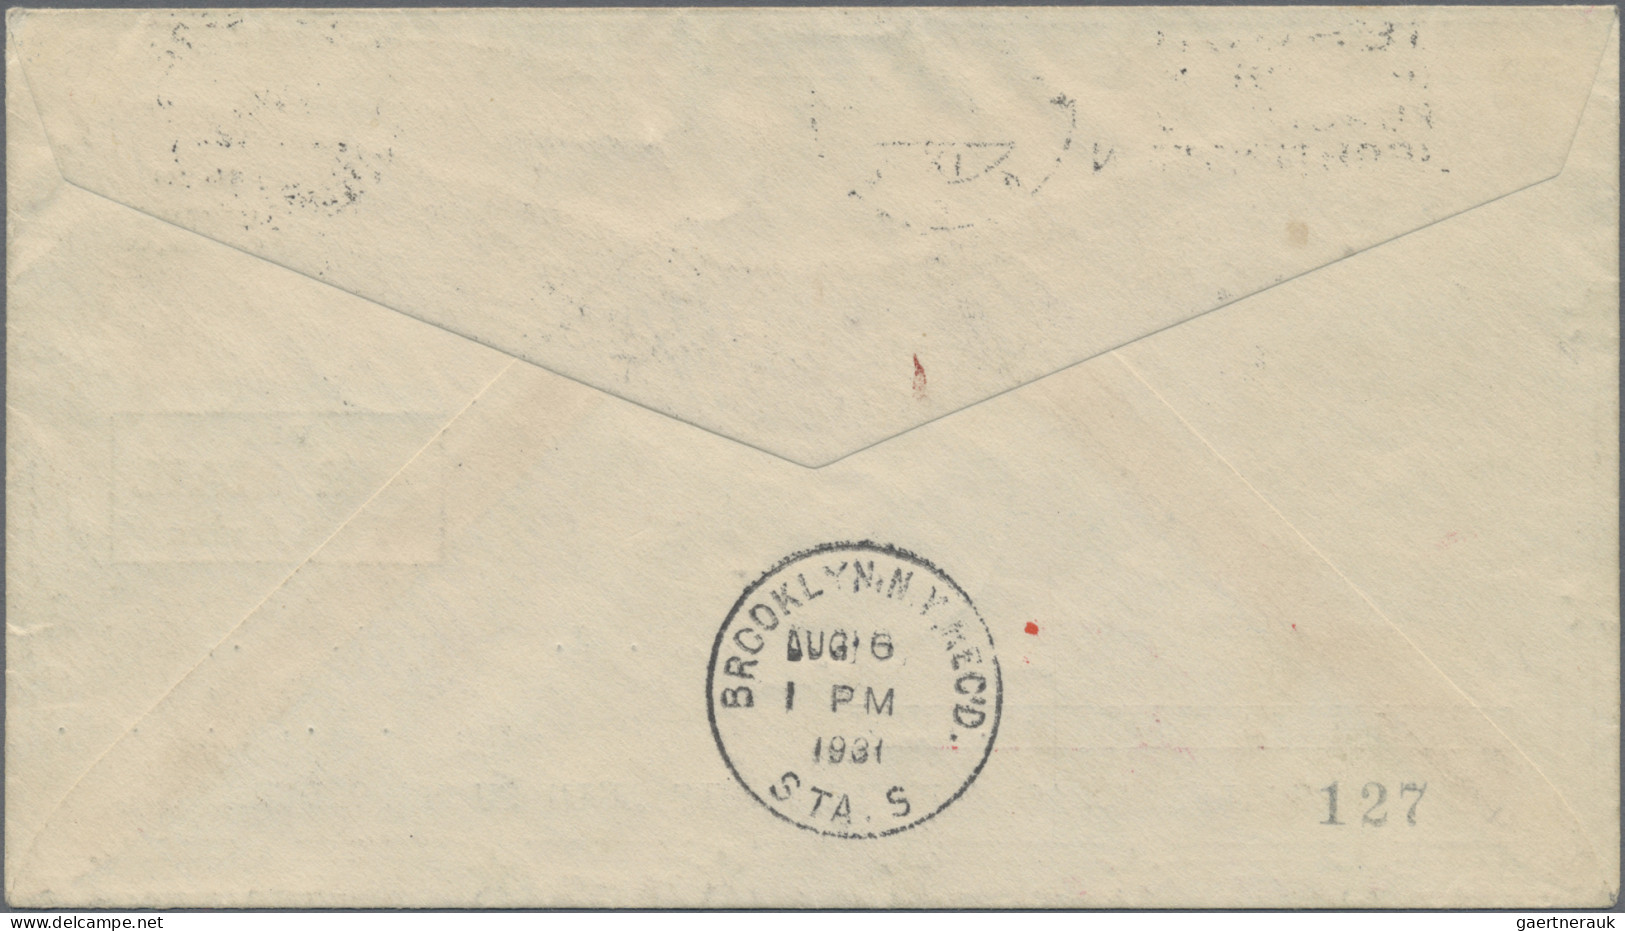 Zeppelin Mail - Germany: 1931, Polarfahrt, Zuleitung Liechtenstein, zwei Briefe